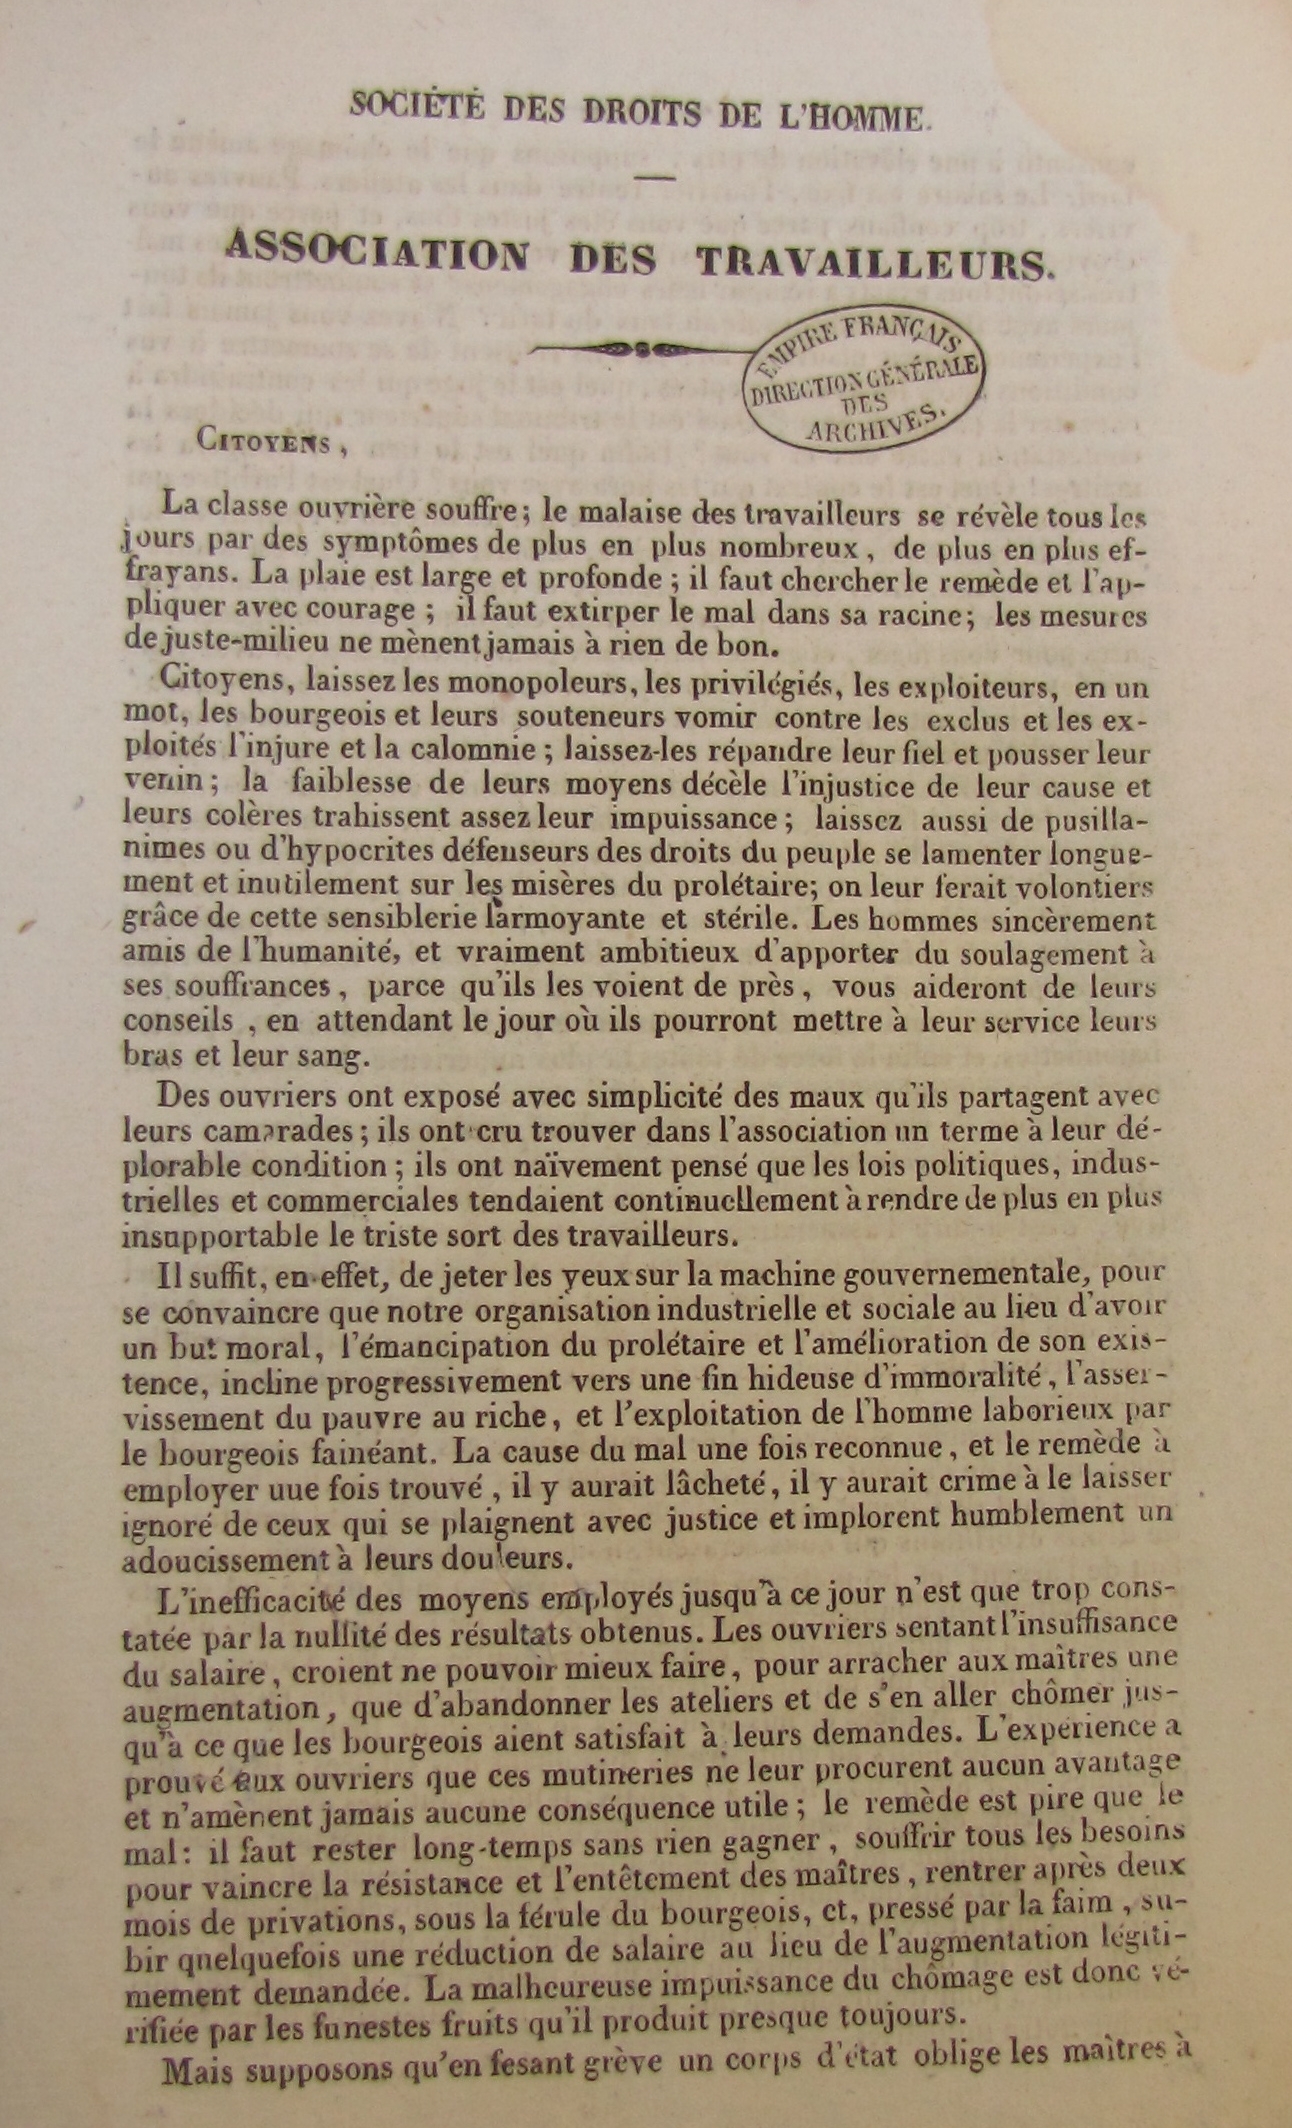 Marc Dufraisse, Association des travailleurs, 1833